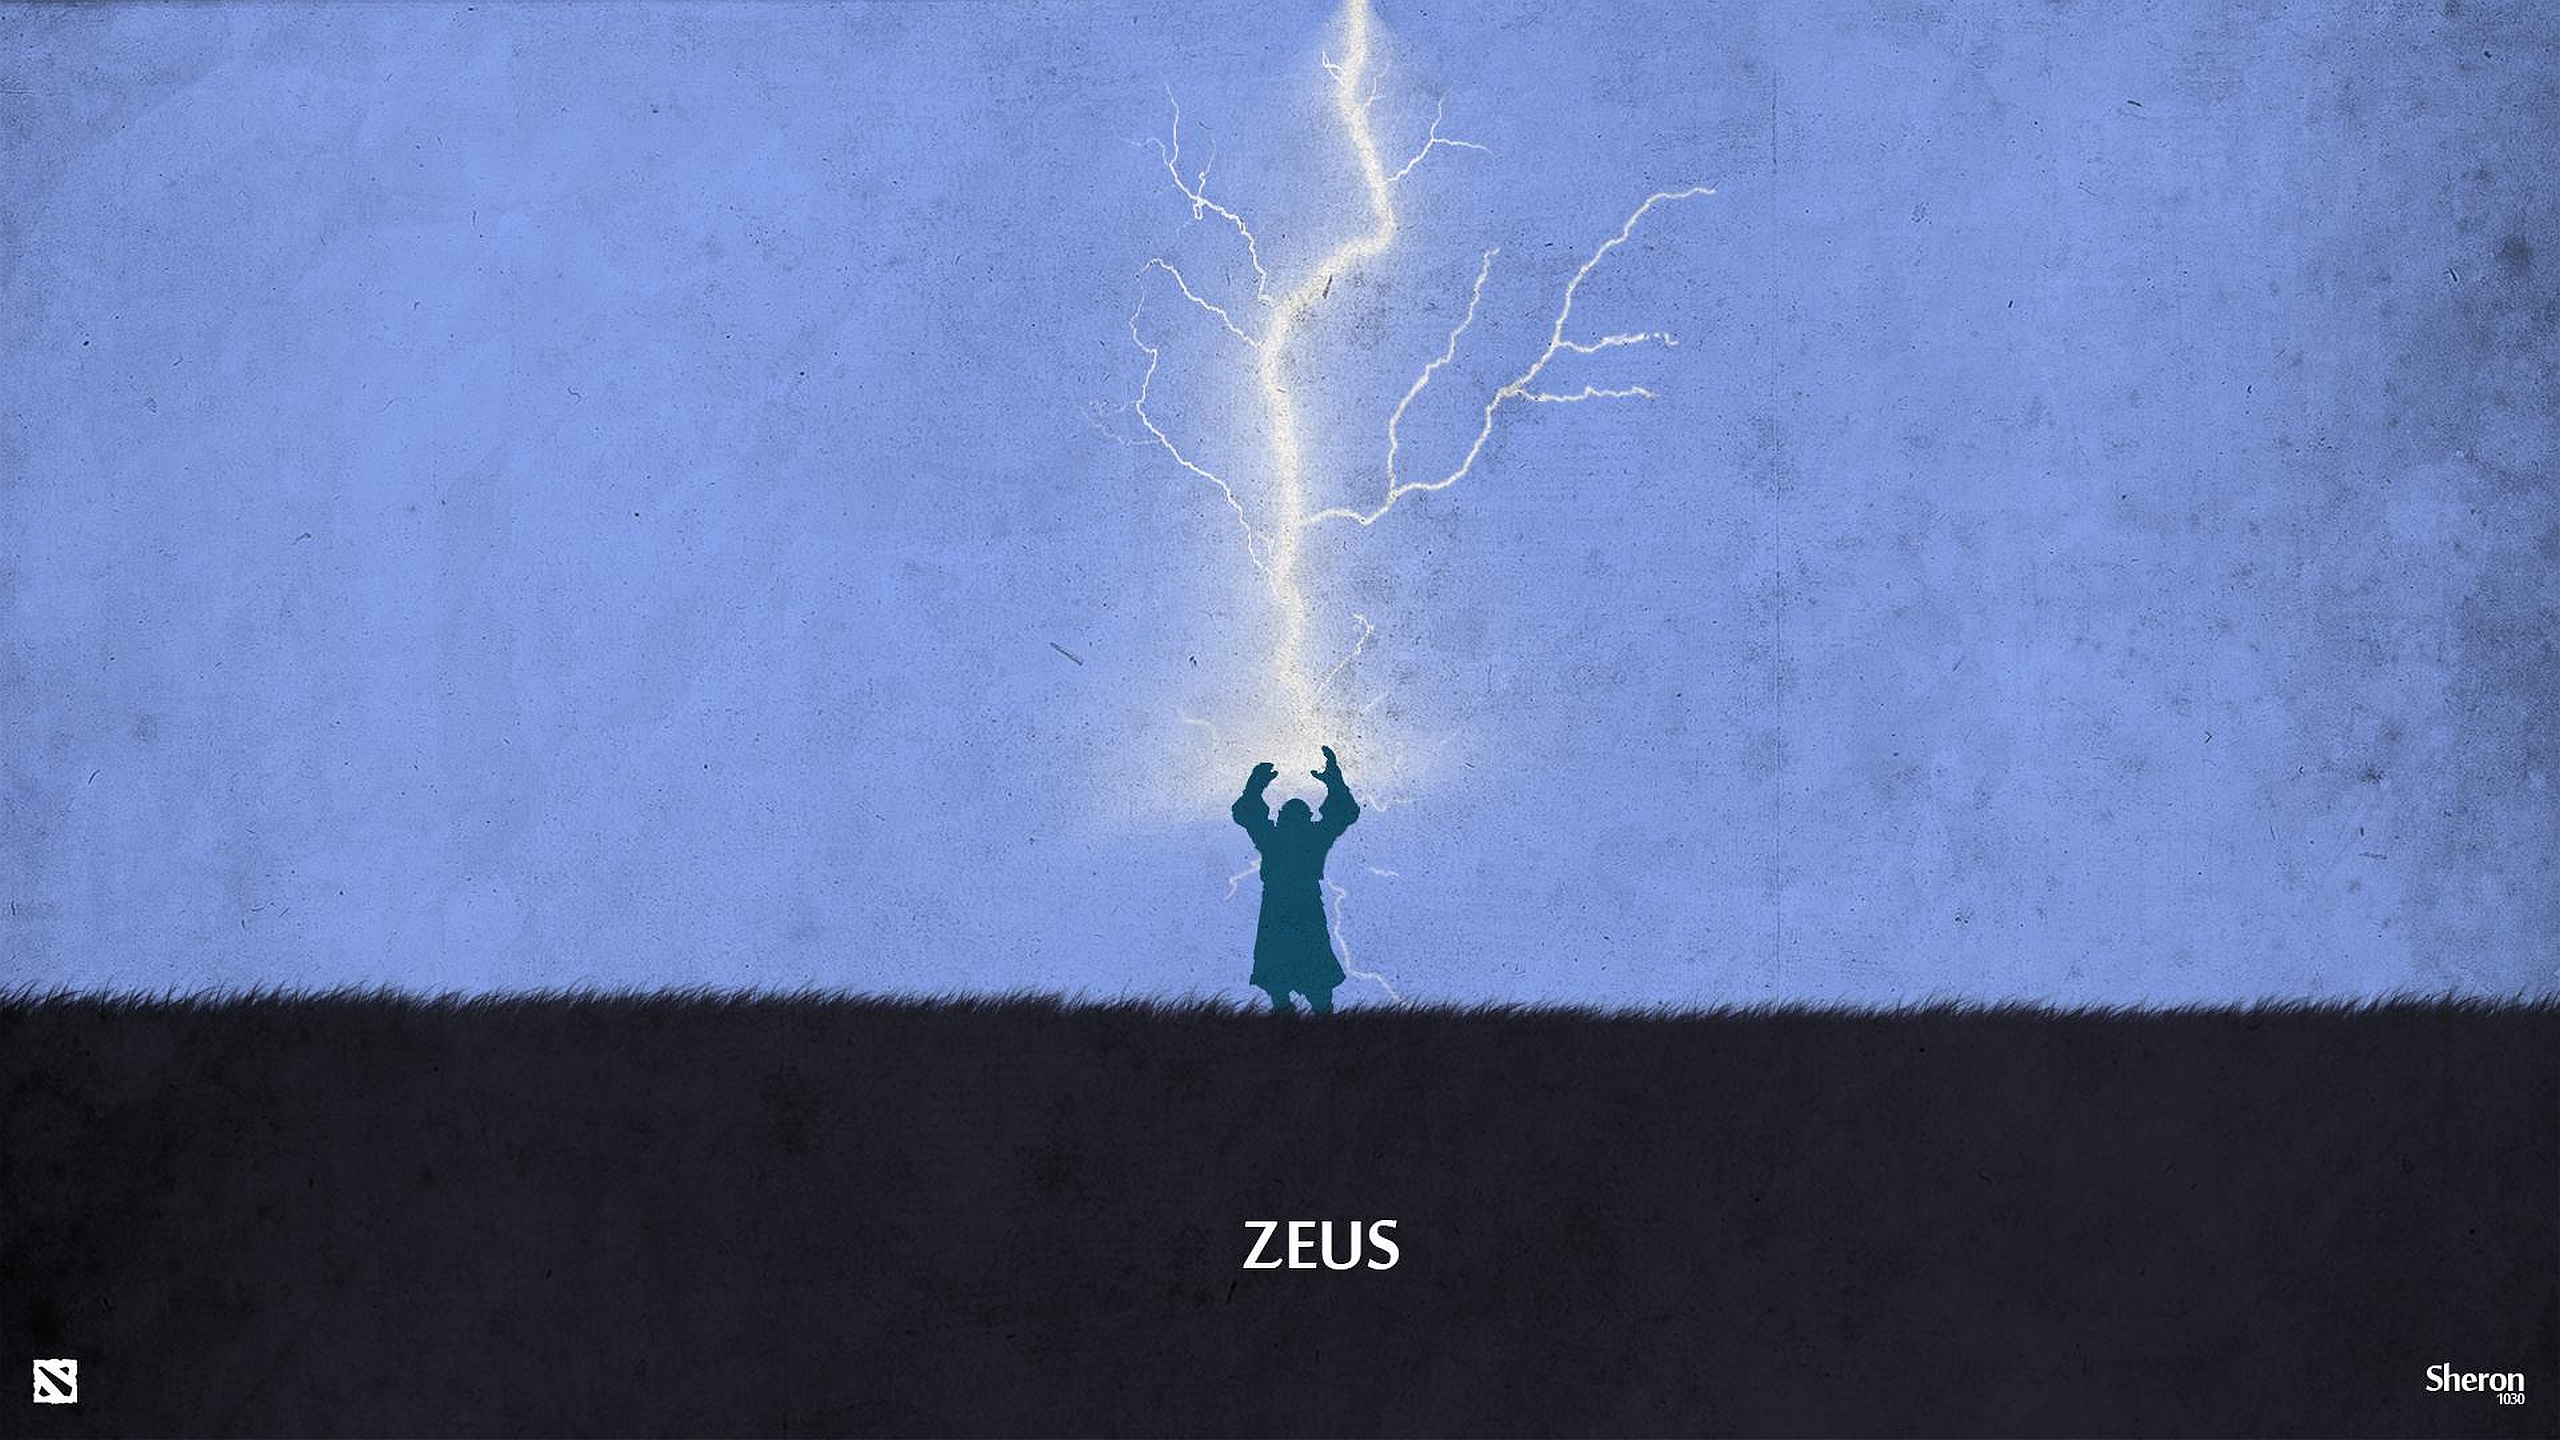 Zeus Dota 2 2560x1440